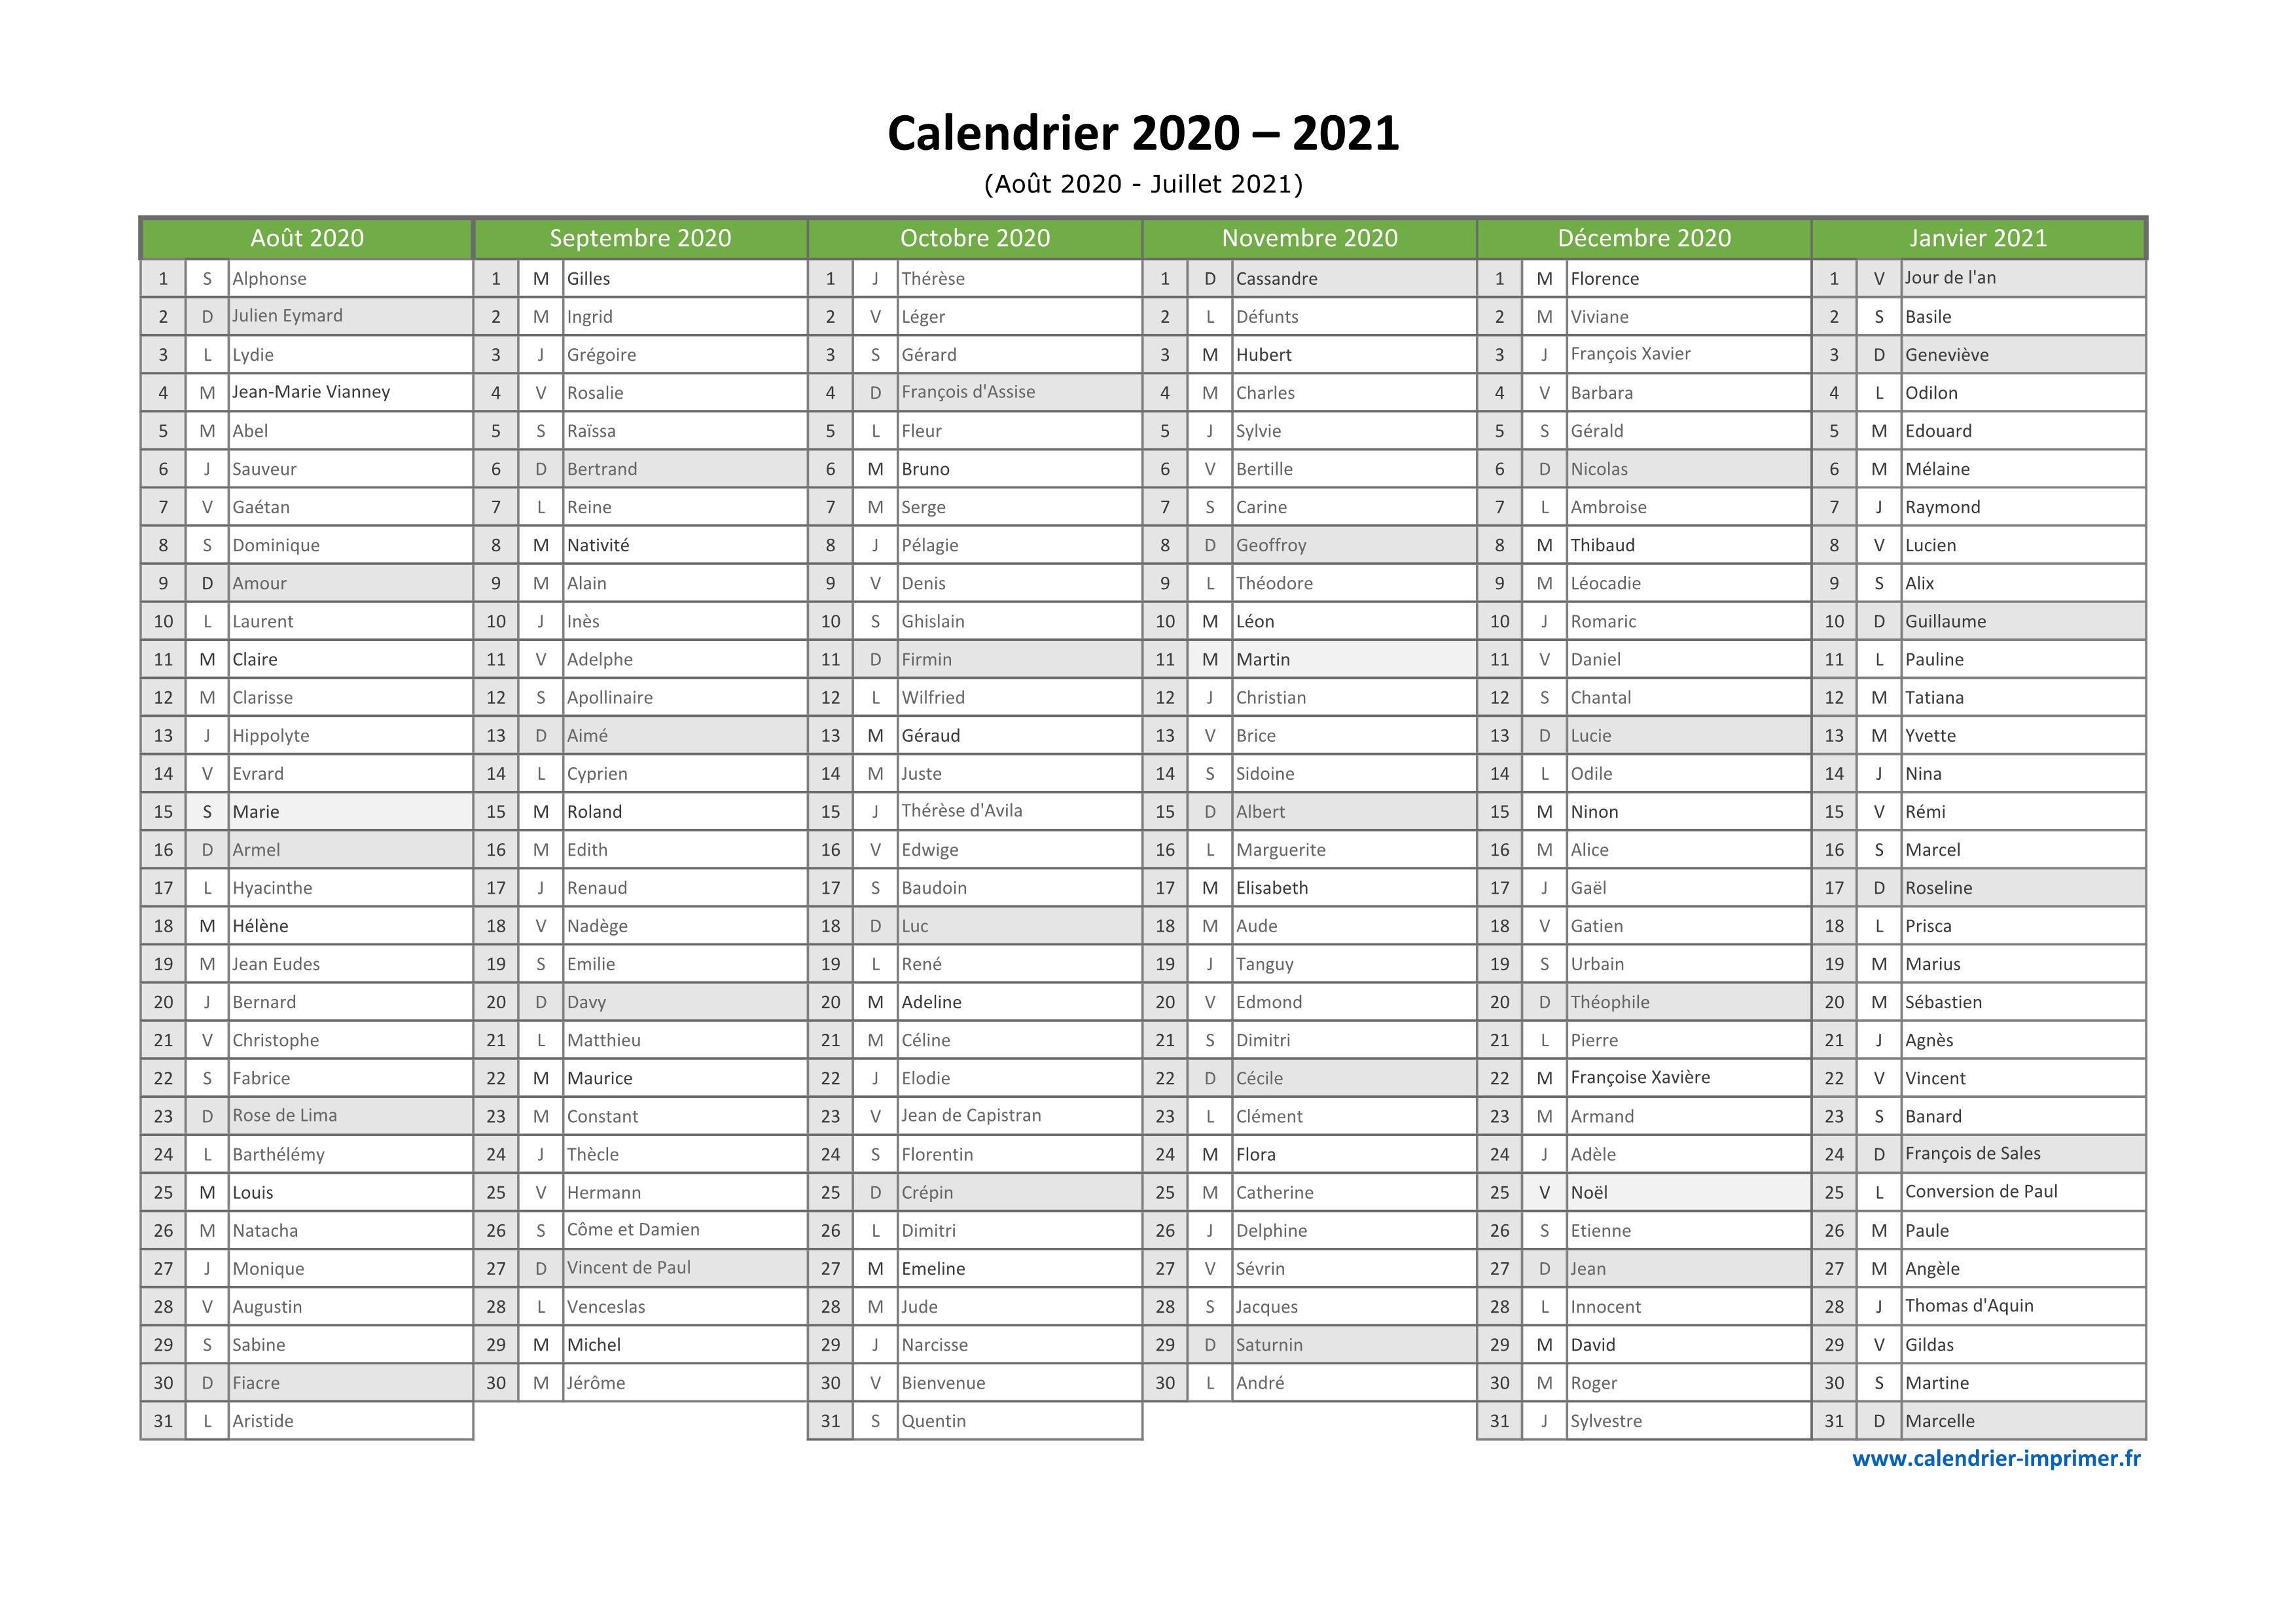 Calendrier Juillet à Décembre 2021 Calendrier 2020 2021 à imprimer